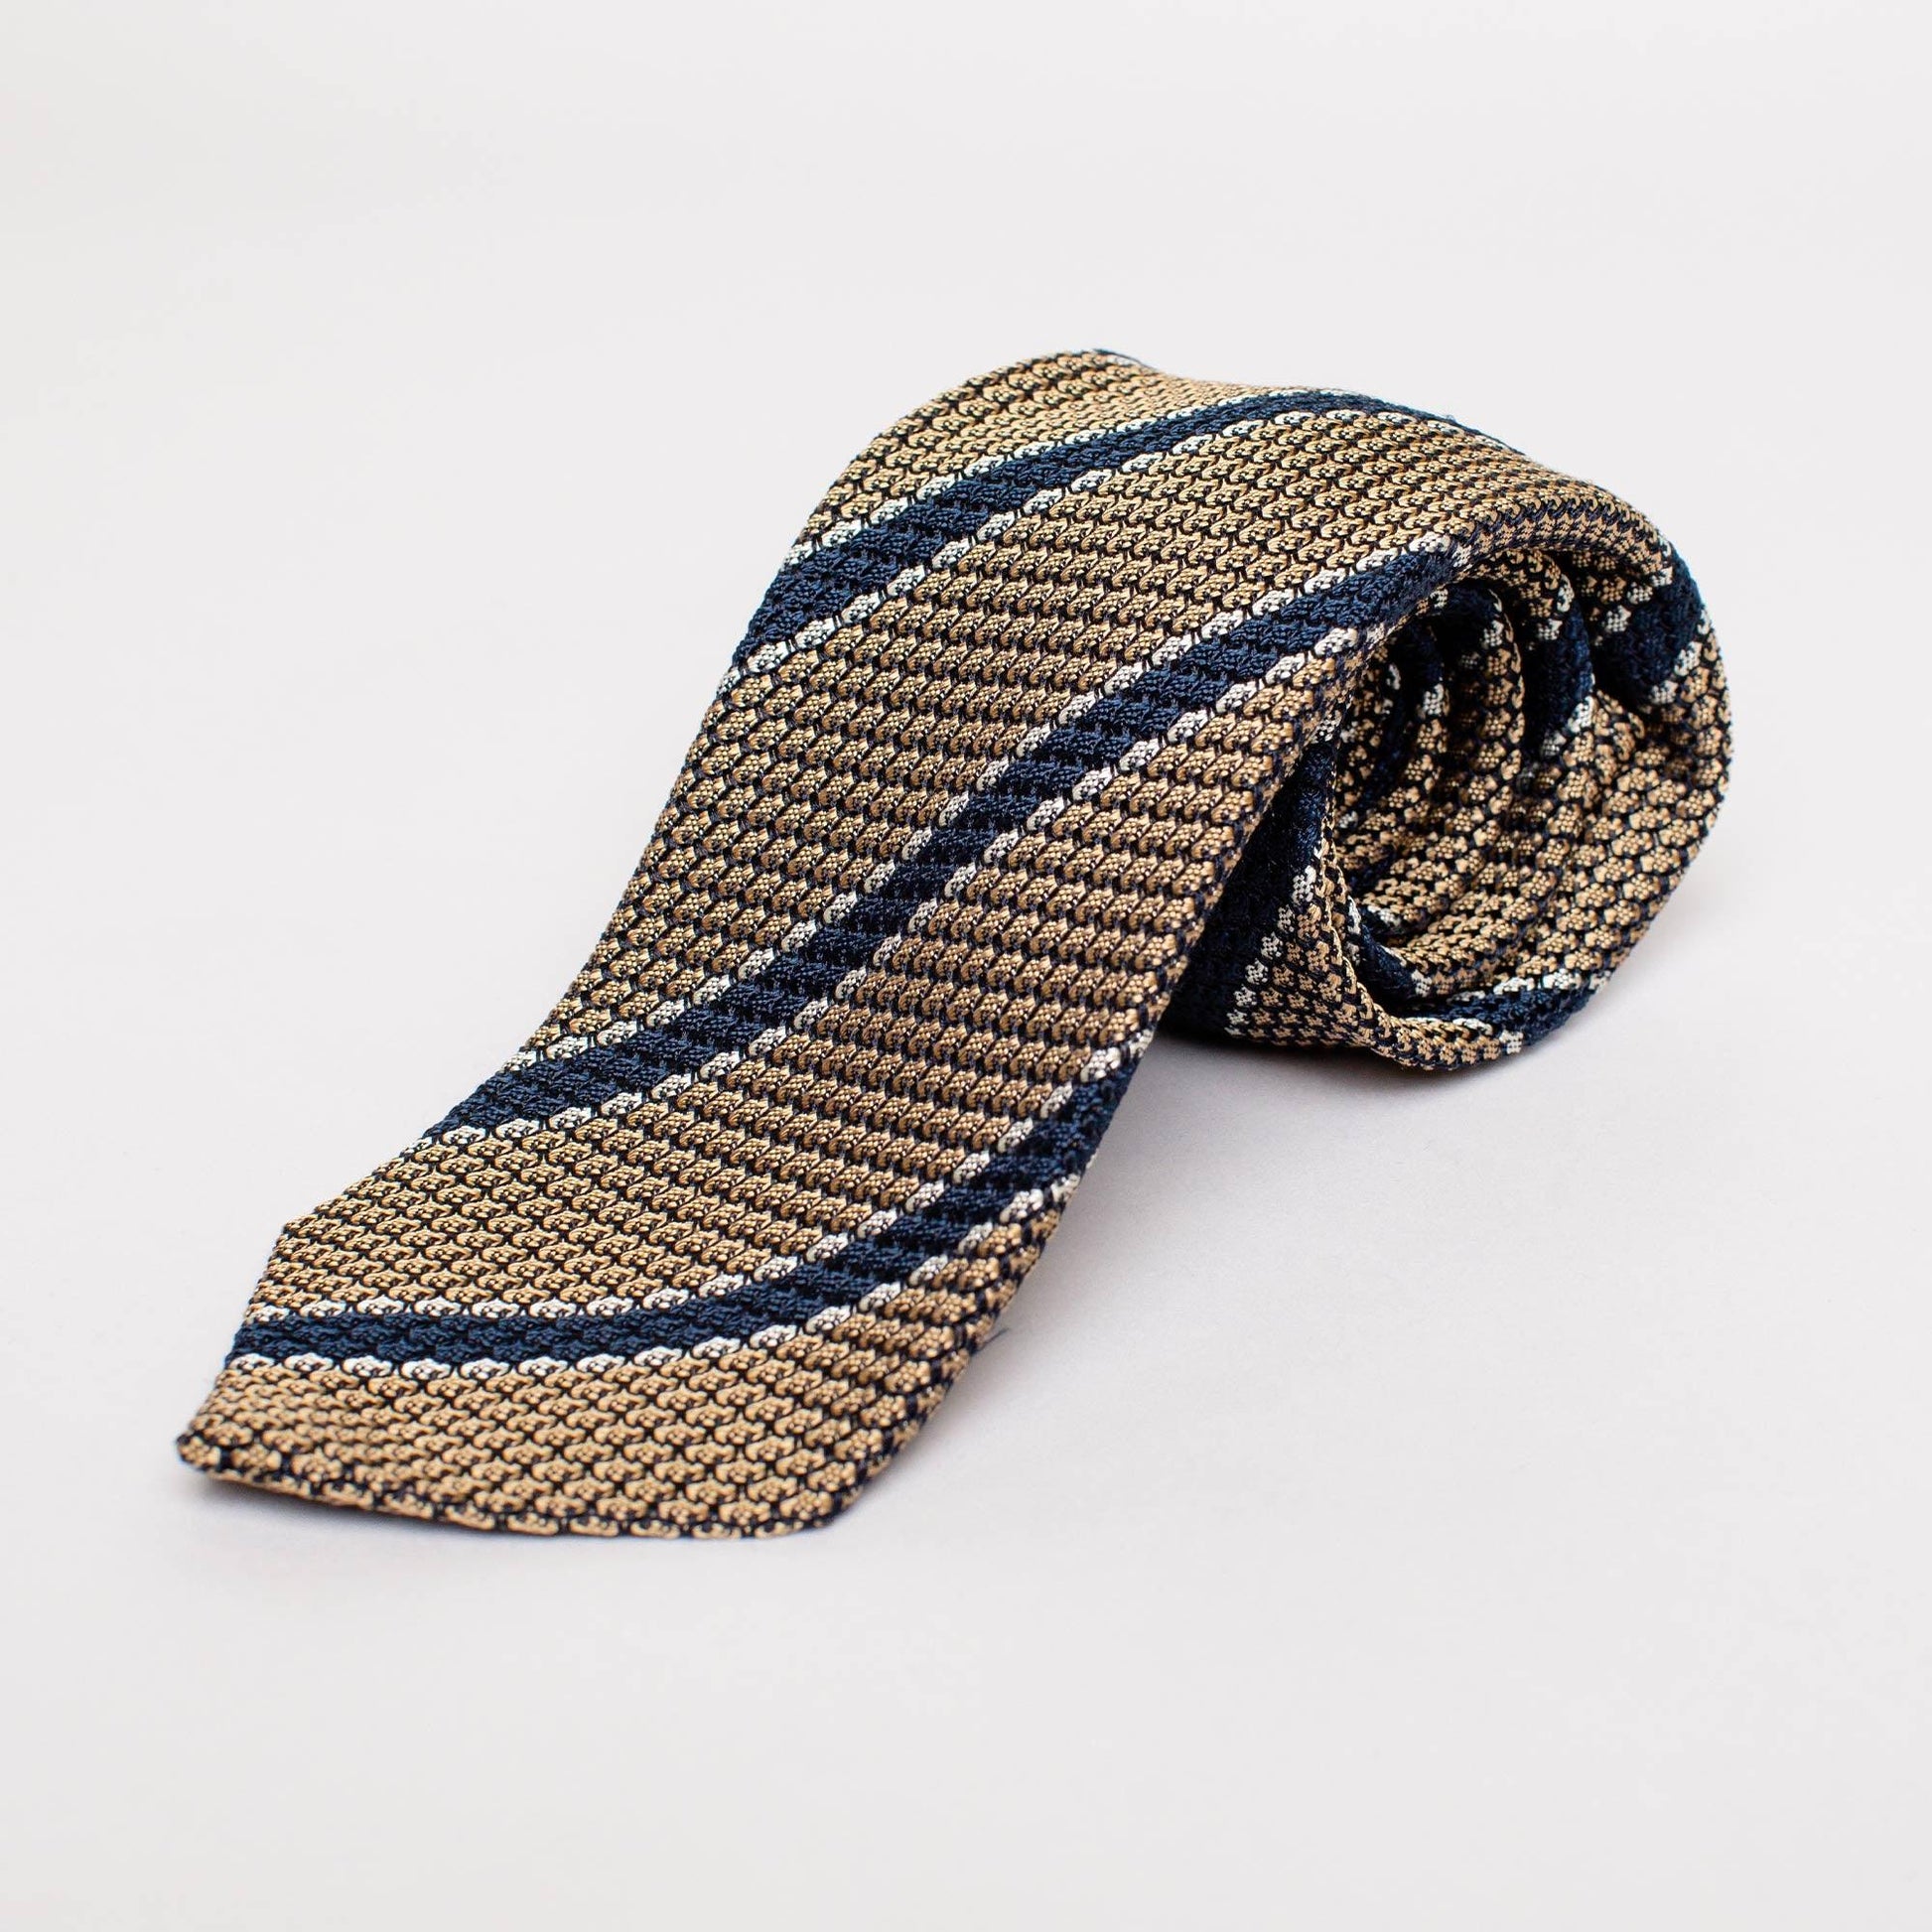 Krawatte Strick Gold / Blau - JUCAN GmbH